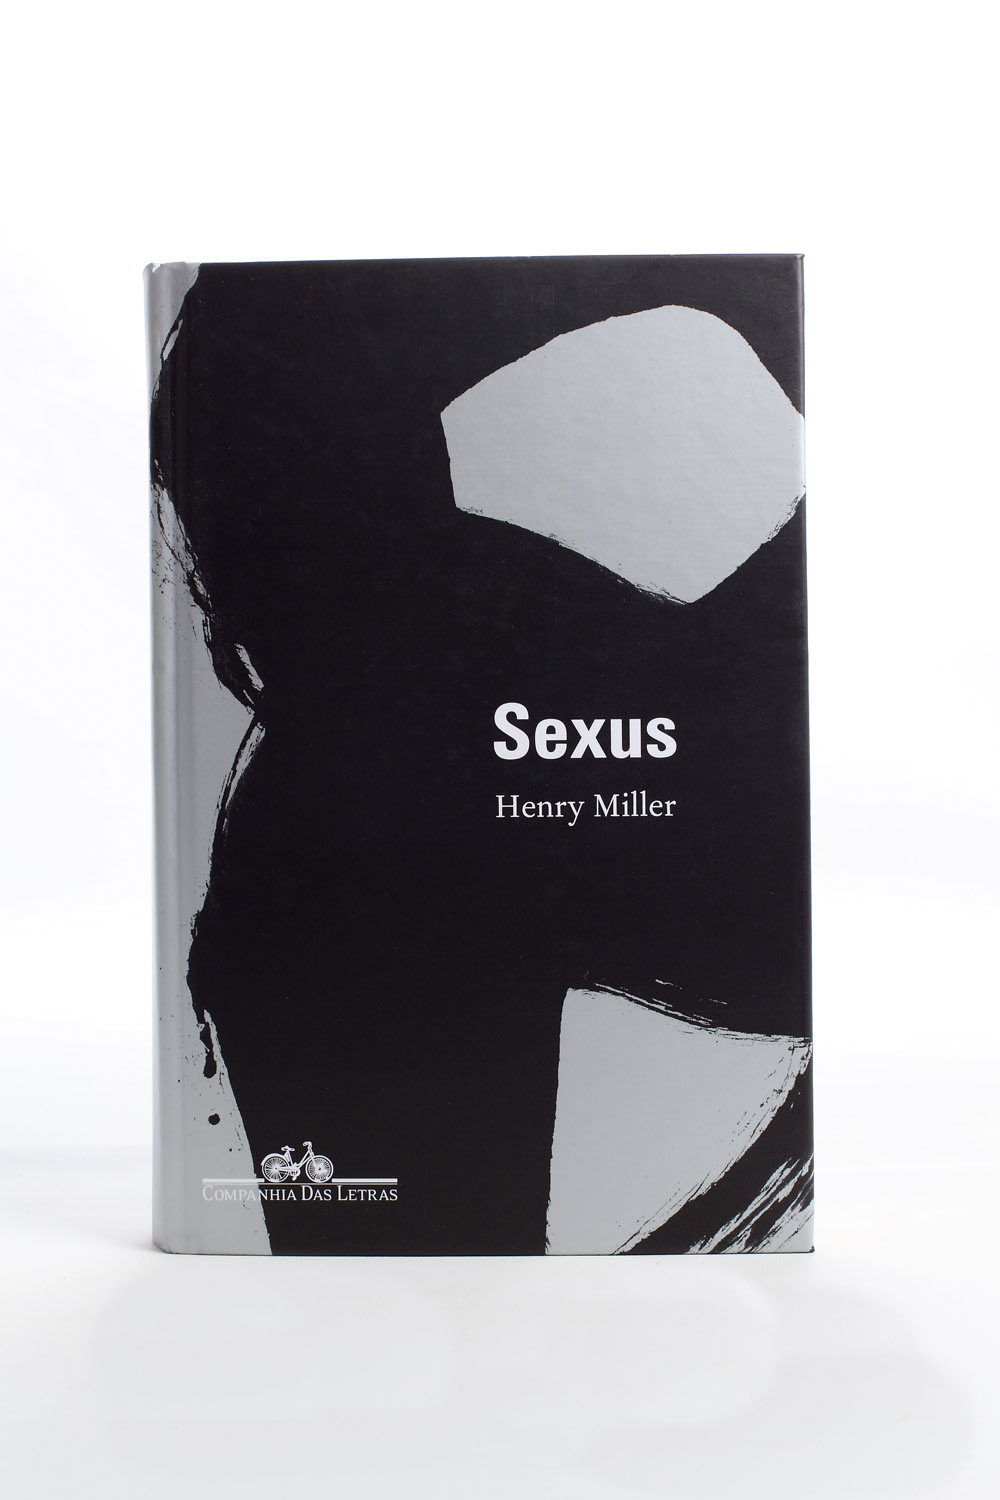 Sexus “Meu livro de cabeceira”